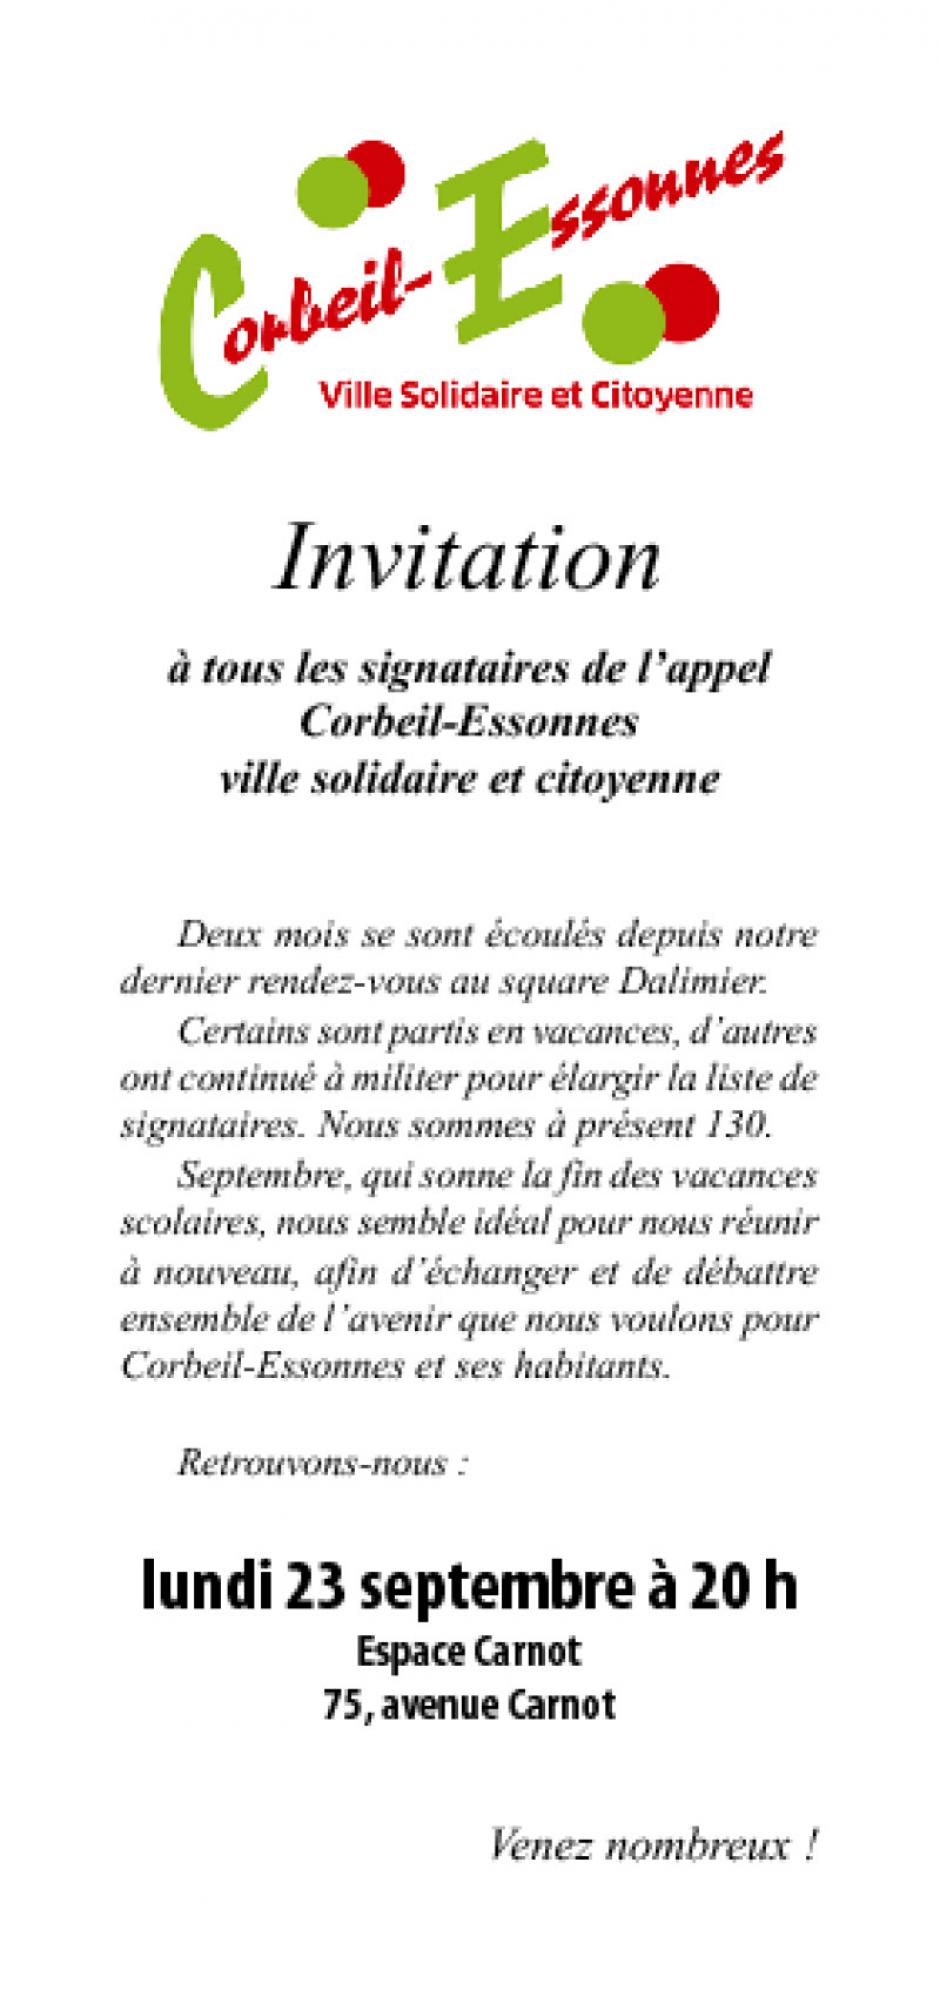 Réunion des signataires de Corbeil-Essonnes solidaire et citoyenne lundi 23 septembre